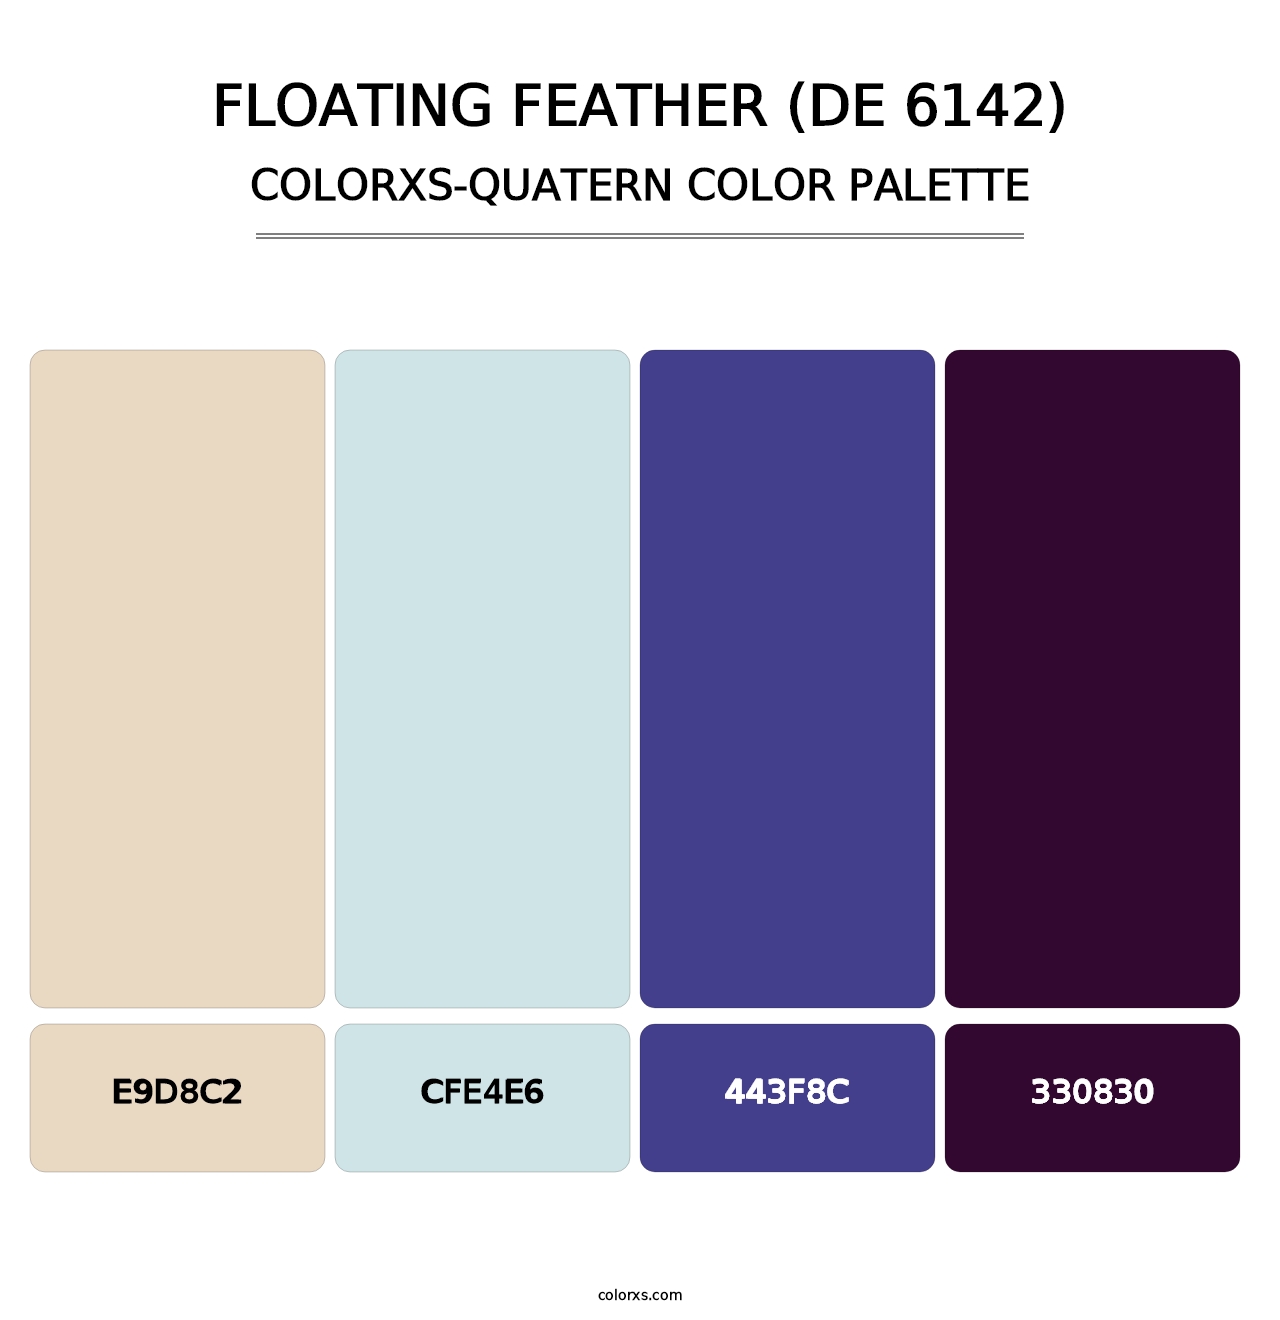 Floating Feather (DE 6142) - Colorxs Quatern Palette